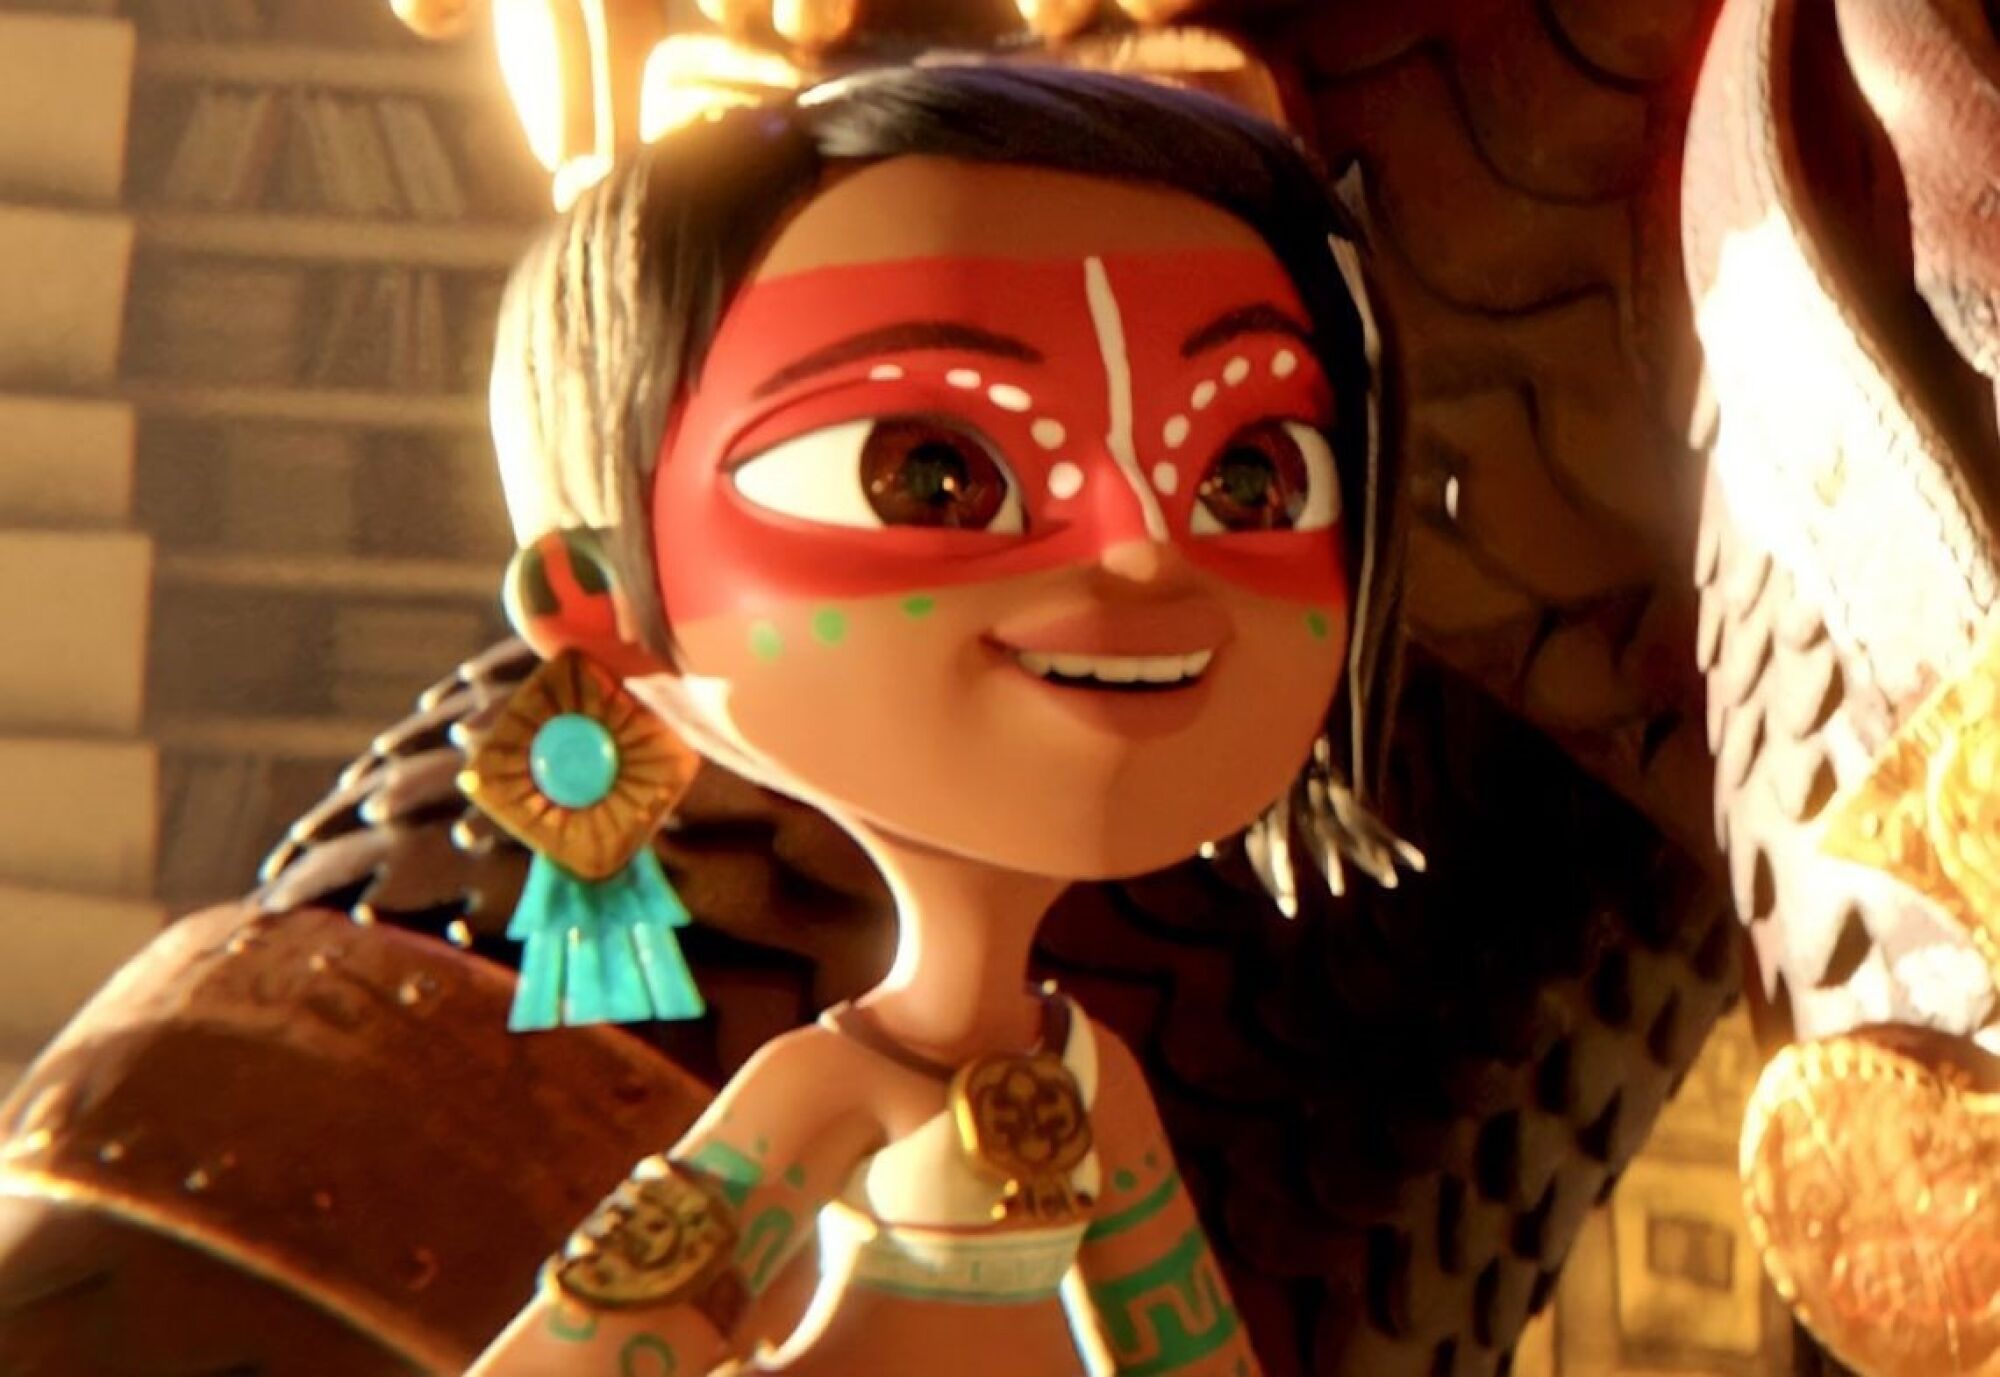 Zoe Saldaña encarna a Maya en la serie animada "Maya and the Three" que estrena este 22 proximamente.